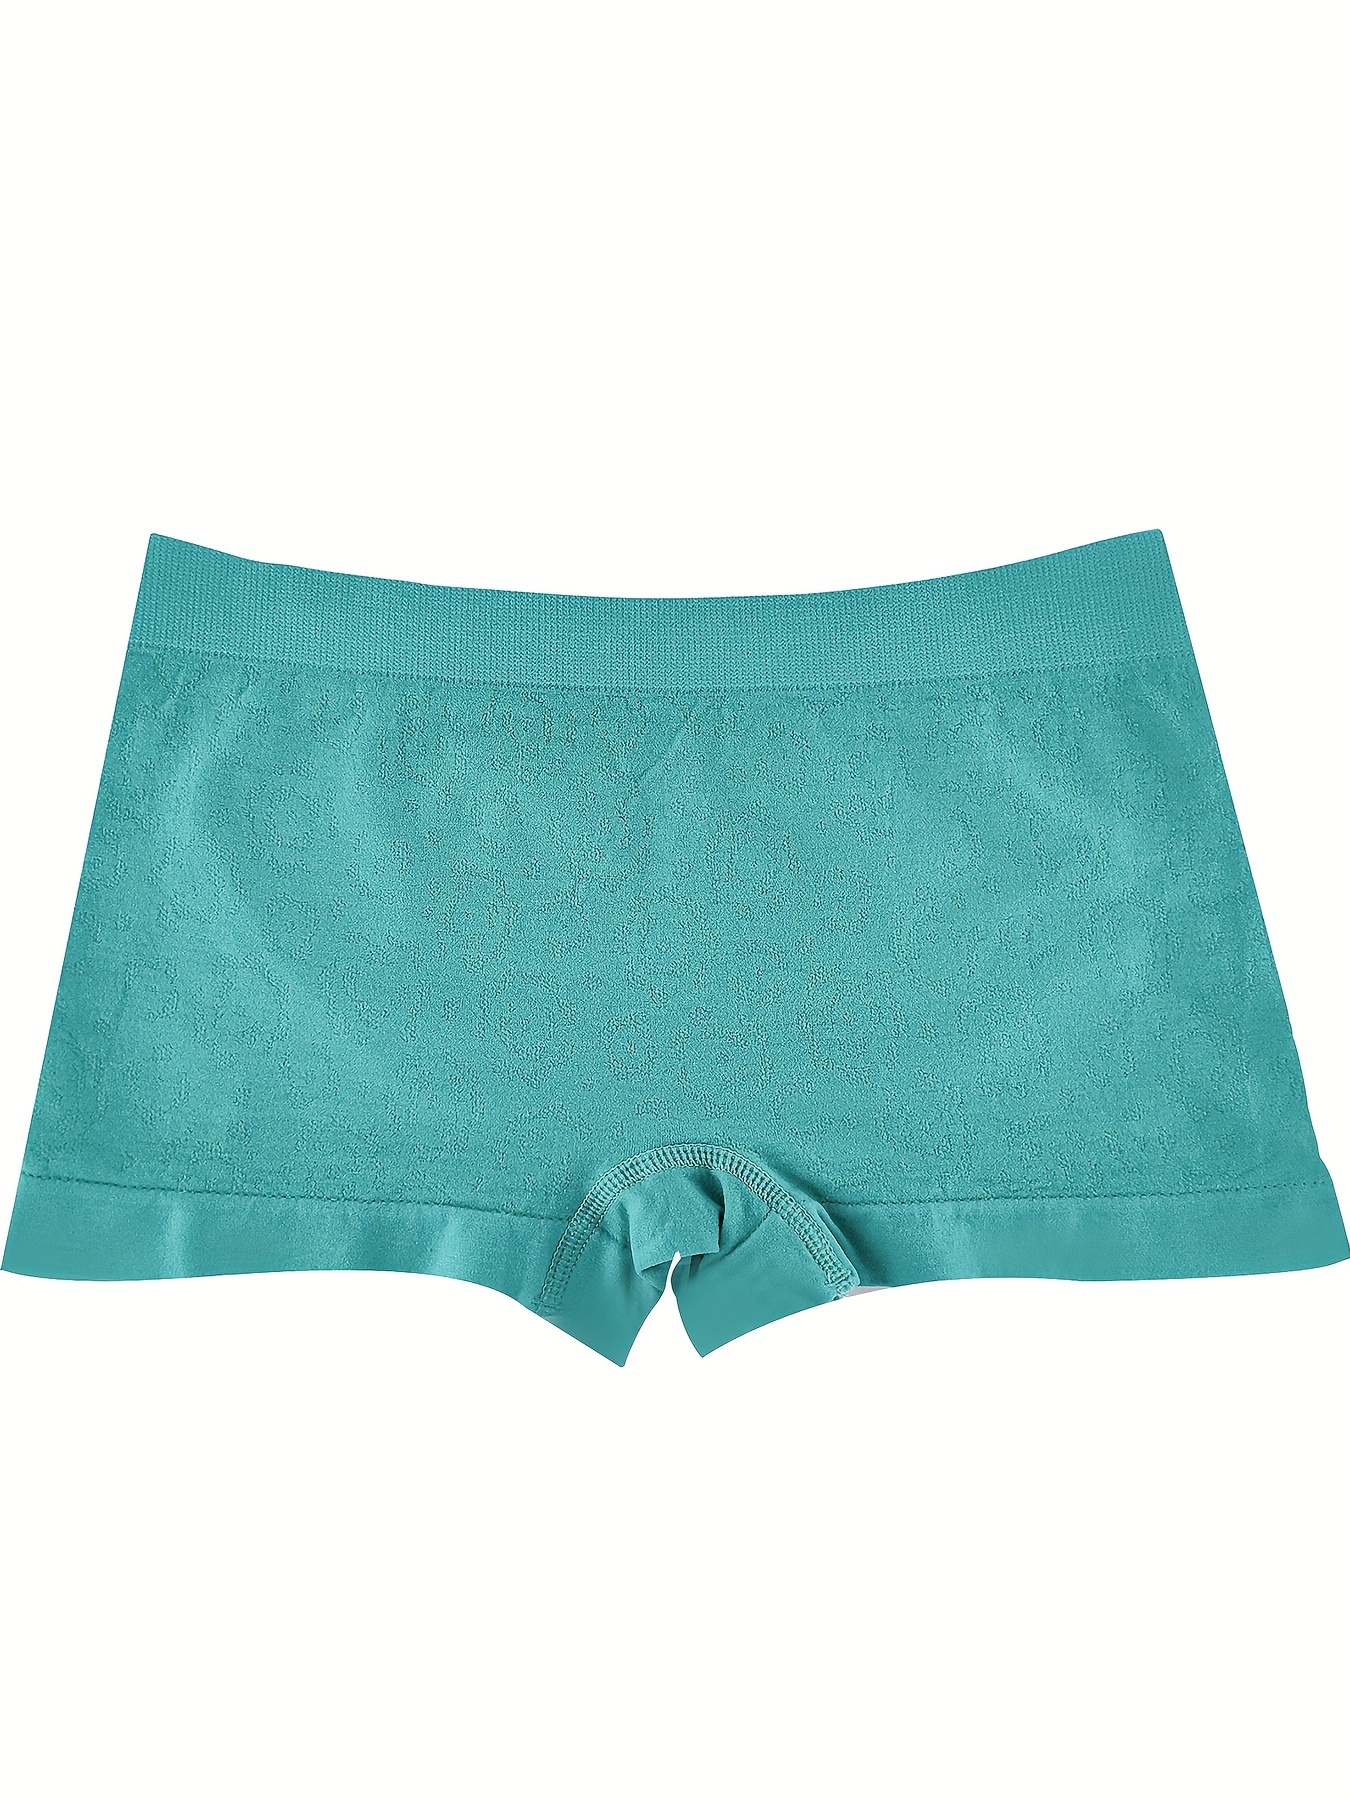 Buy ASJAR Seamless Boyshort Panties for Women Briefs for Women